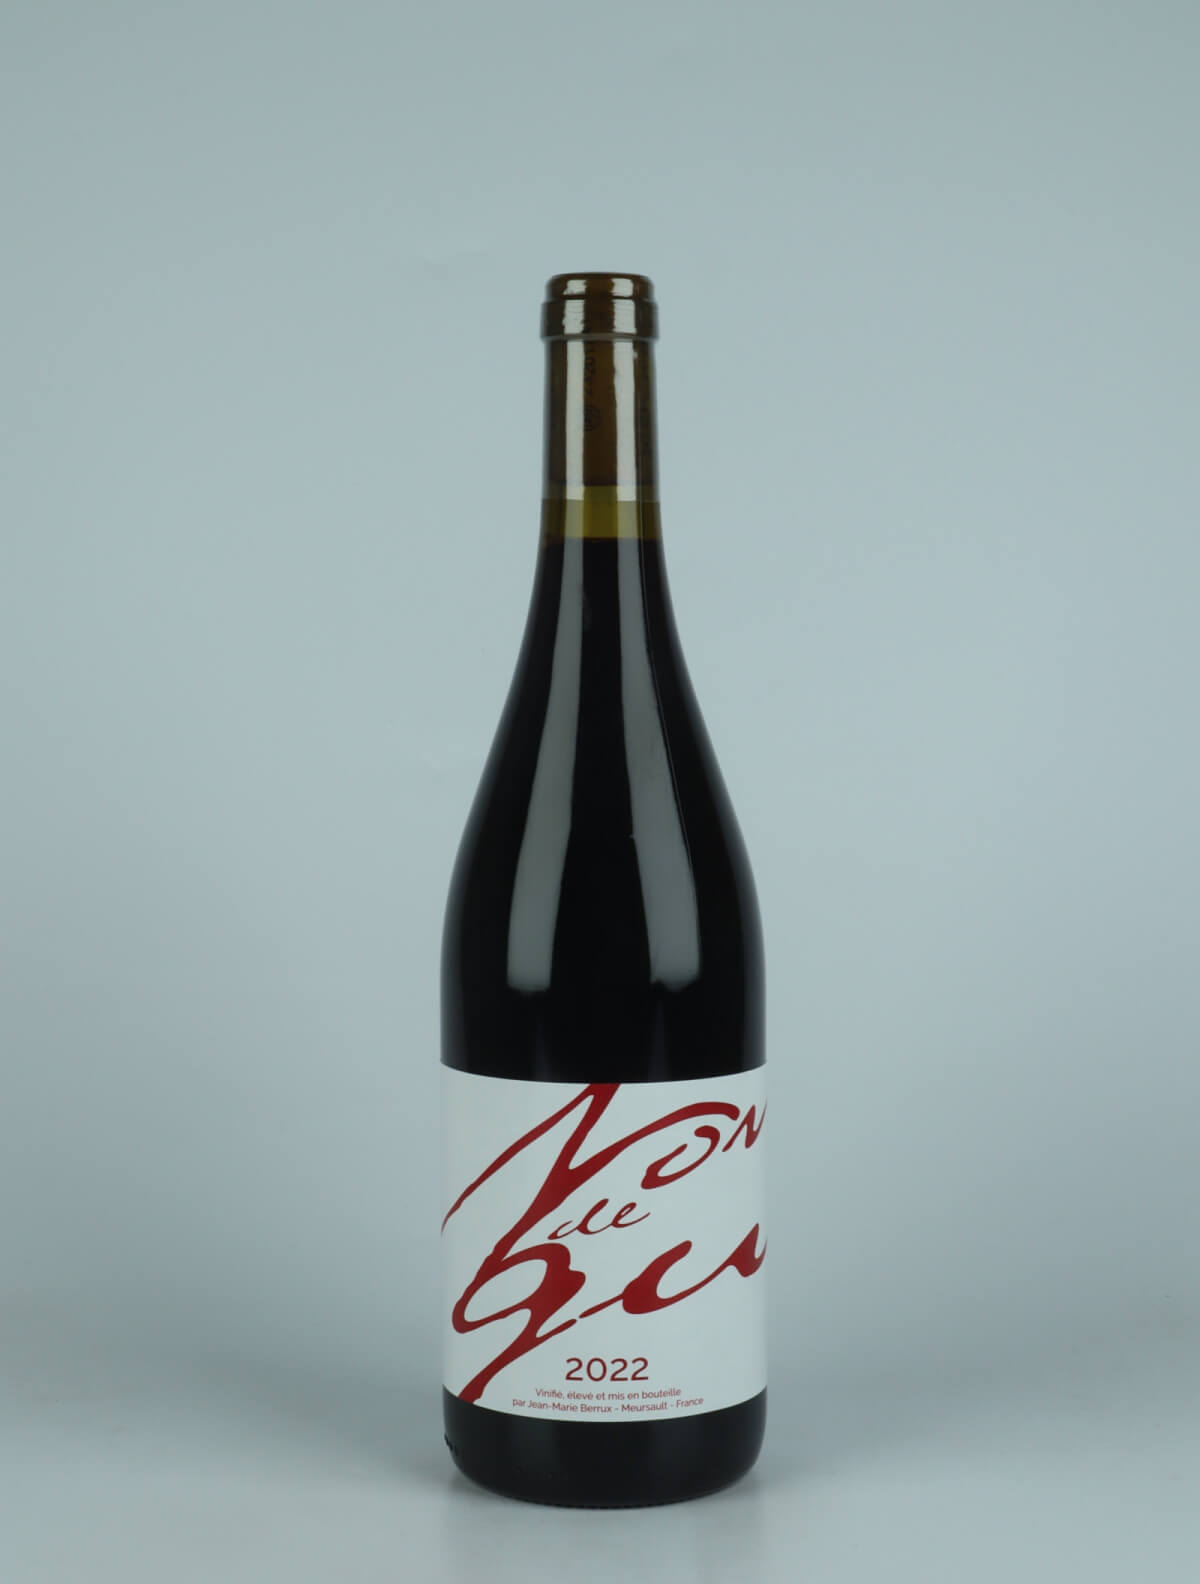 En flaske 2022 Nondegu Rødvin fra Jean-Marie Berrux, Bourgogne i Frankrig